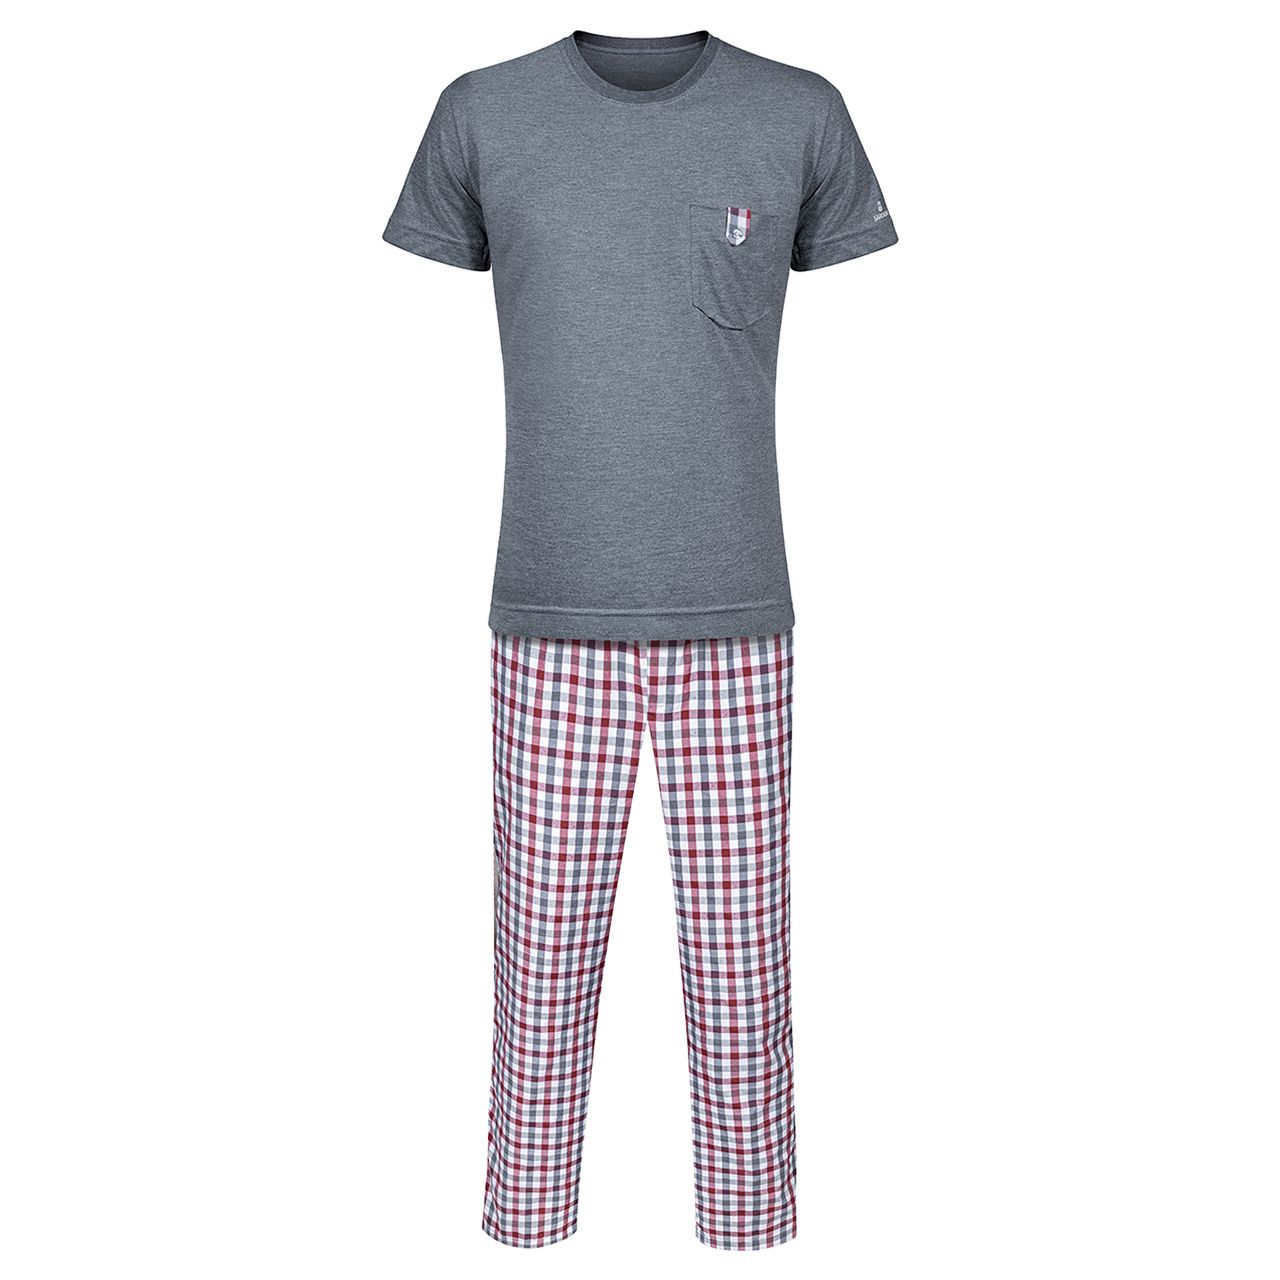 ست تی شرت و شلوار مردانه ساروک مدل STSHNJ110 -08 رنگ دودی -  - 1